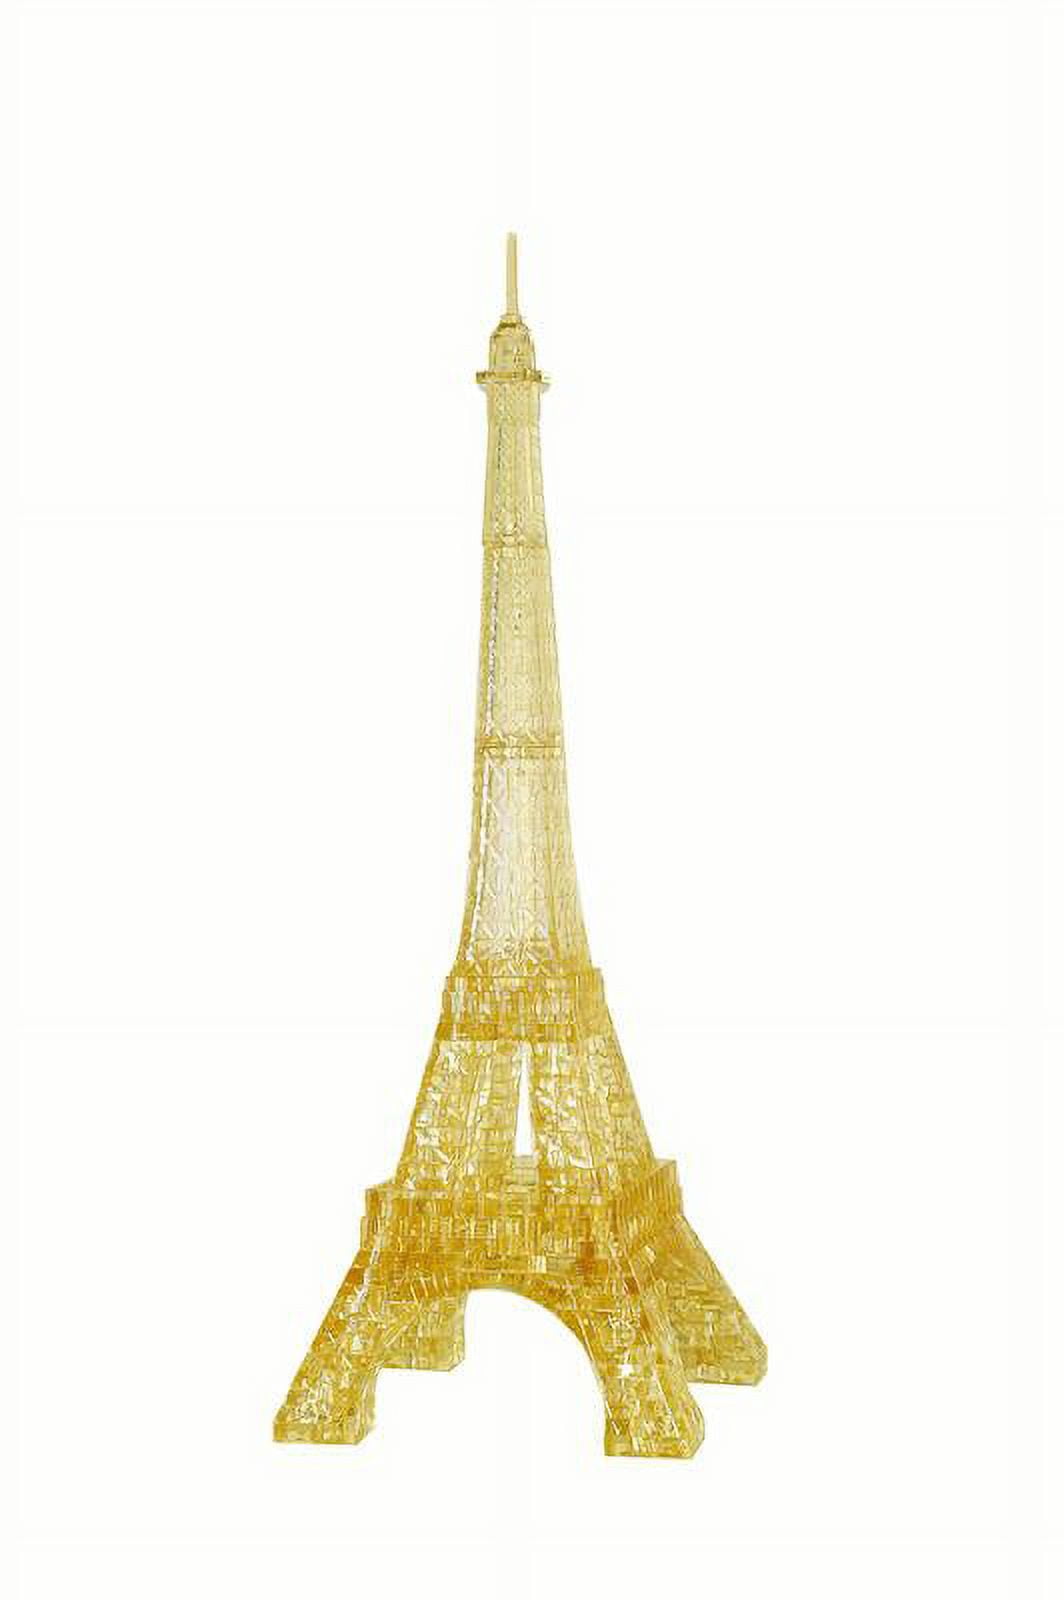 Puzzle Crystal 3D Tour Eiffel